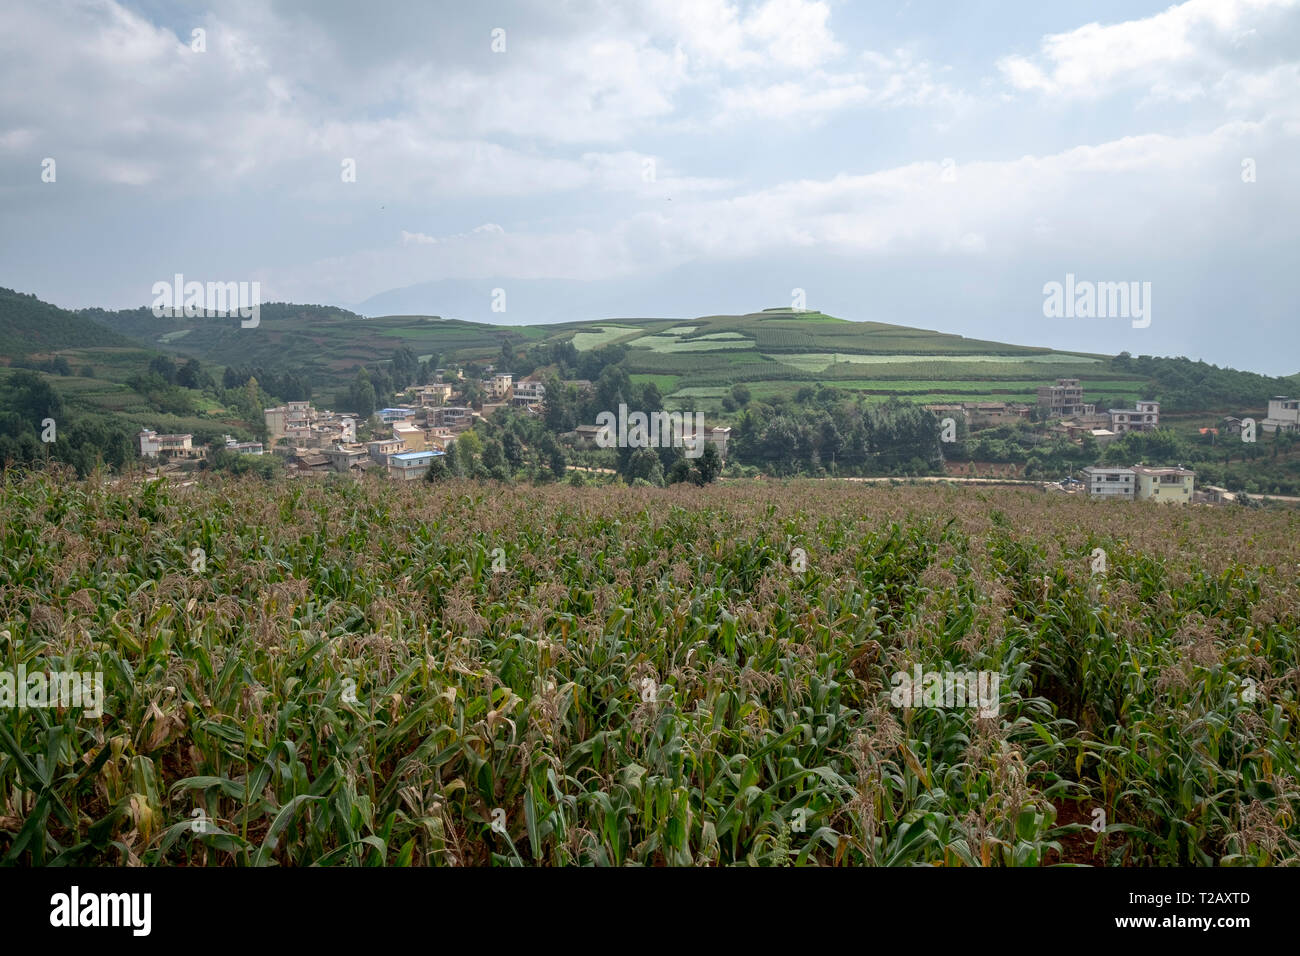 Paisaje rural de colinas con campos de cultivo de maíz. Fotografiado cerca de Kumming, en la provincia de Yunnan en el suroeste de China en septiembre Foto de stock